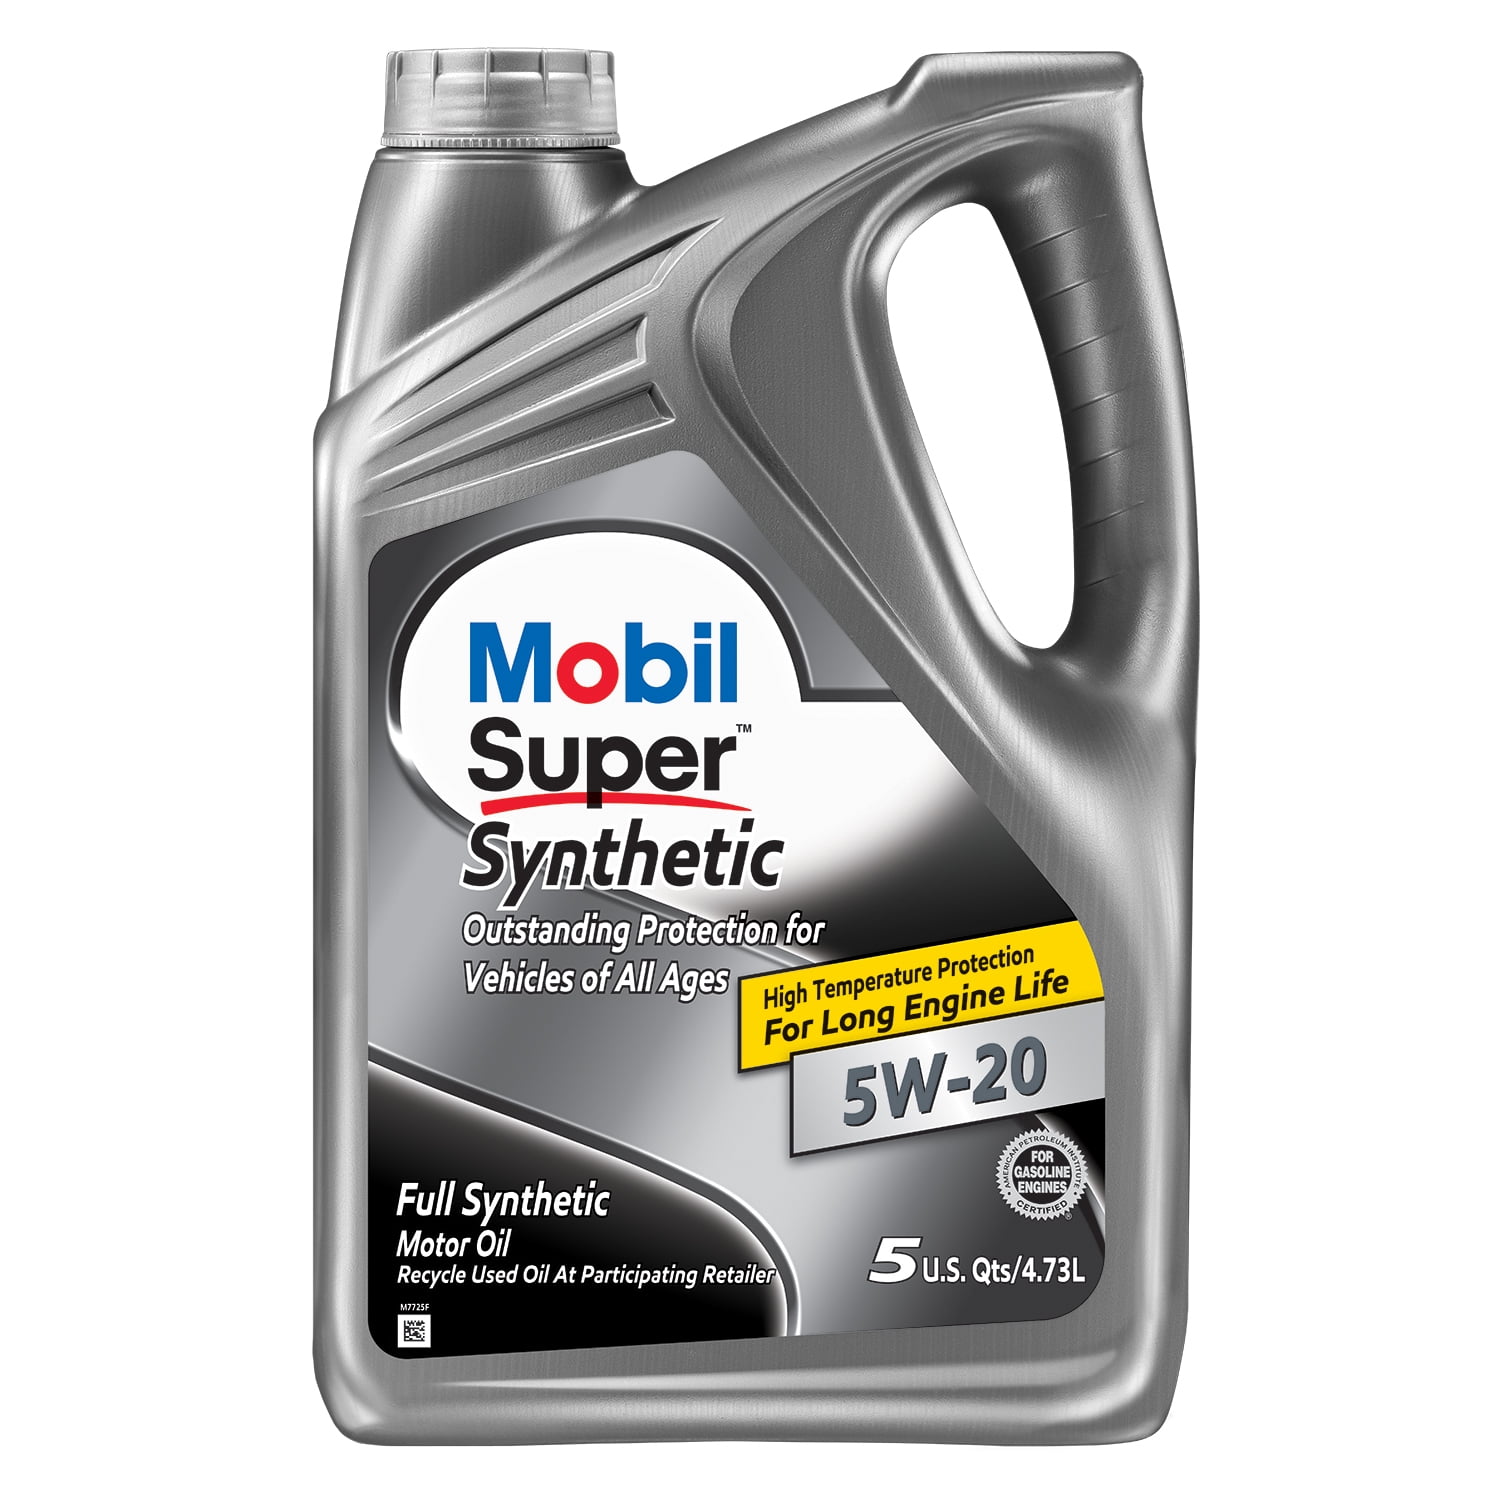 Mobil Super Synthetic Motor Oil 5W-20, 5 Quart - Walmart.com - Walmart.com Can You Mix 5w 20 And 0w 20